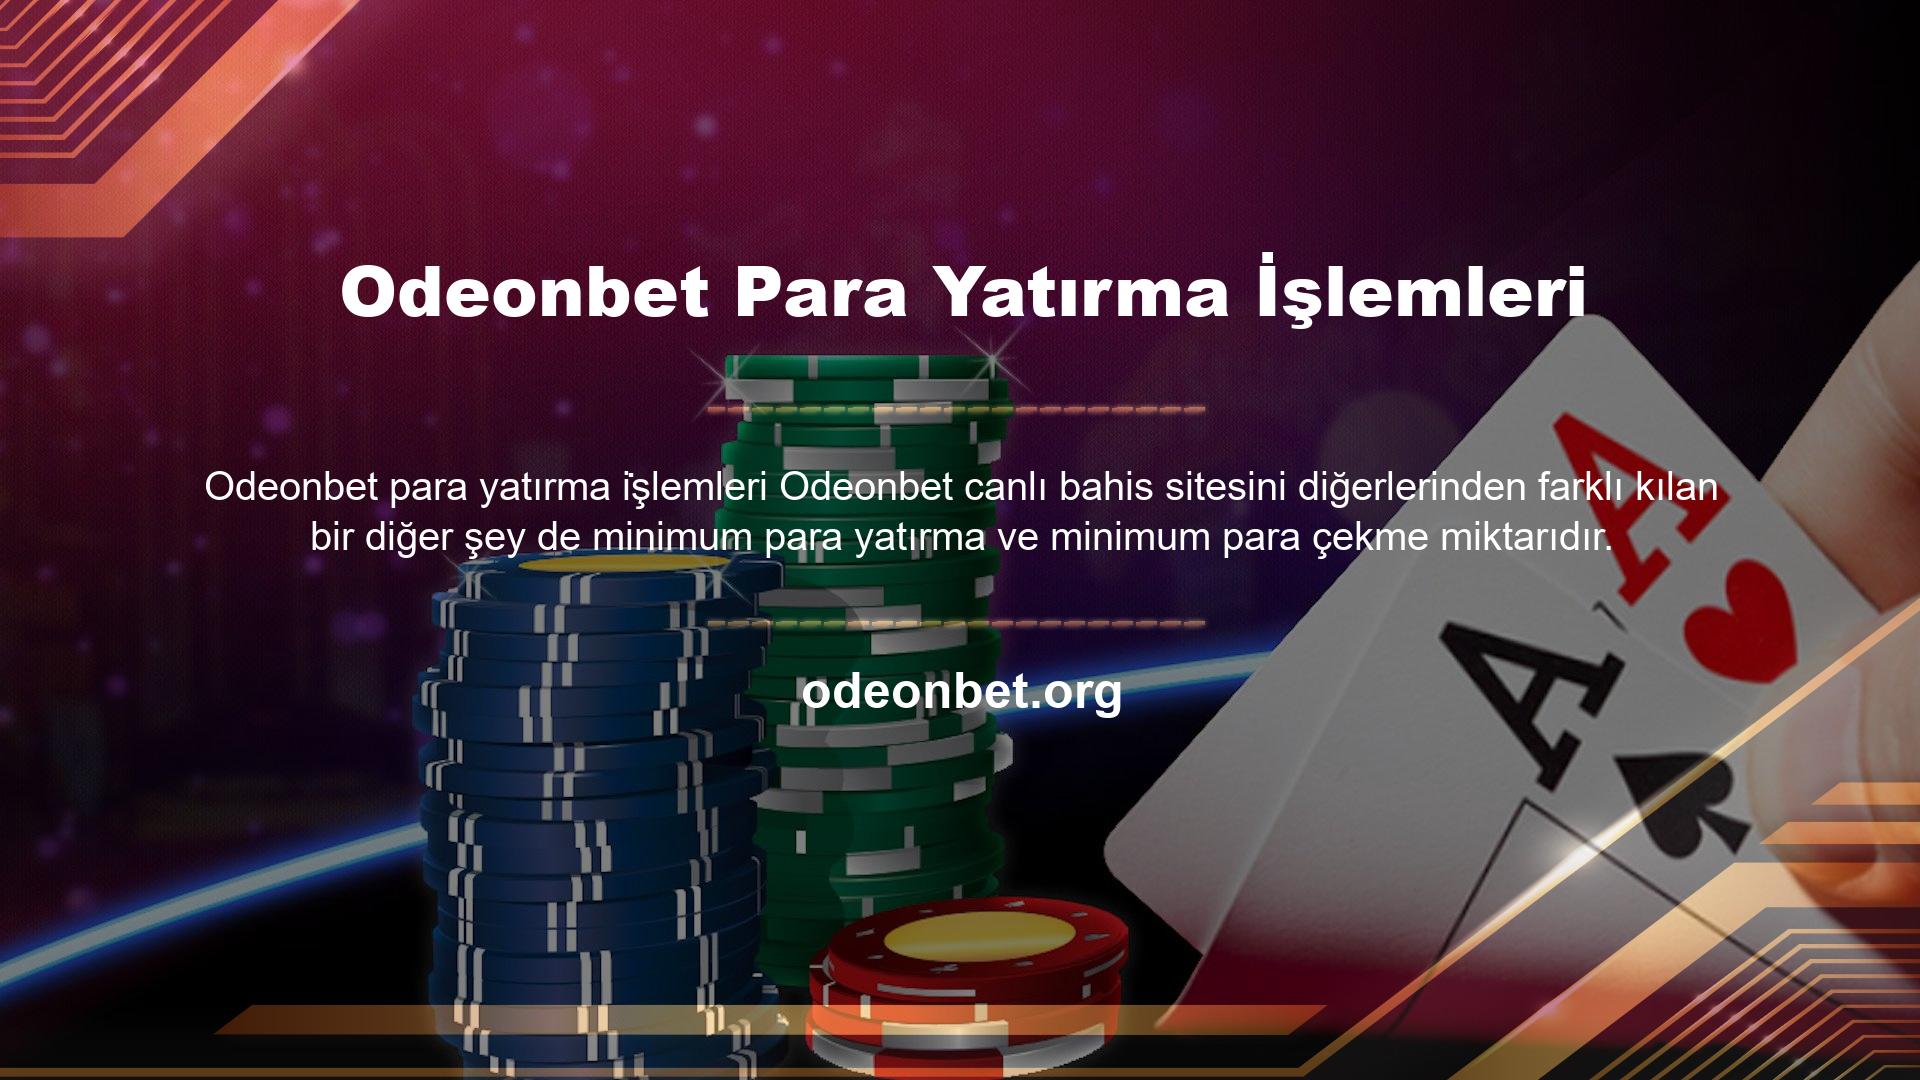 Odeonbet web sitesi, kullanılan yatırım veya para çekme yönteminden bağımsız olarak kullanıcılarına küçük miktarlarda para yatırma ve çekme fırsatı sunar